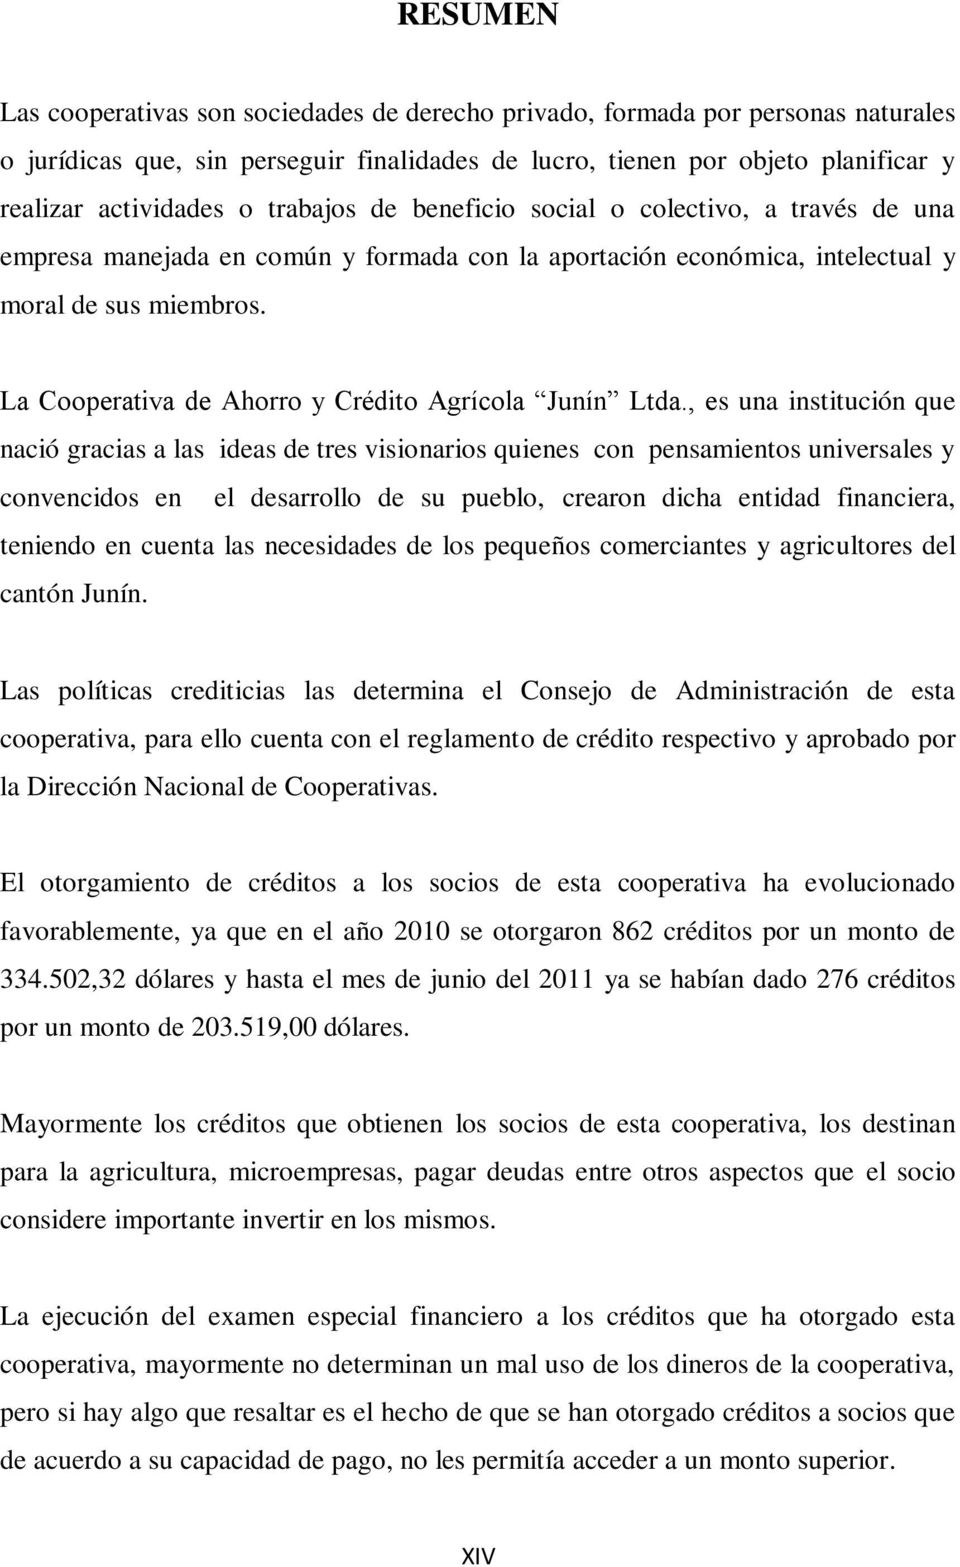 La Cooperativa de Ahorro y Crédito Agrícola Junín Ltda.